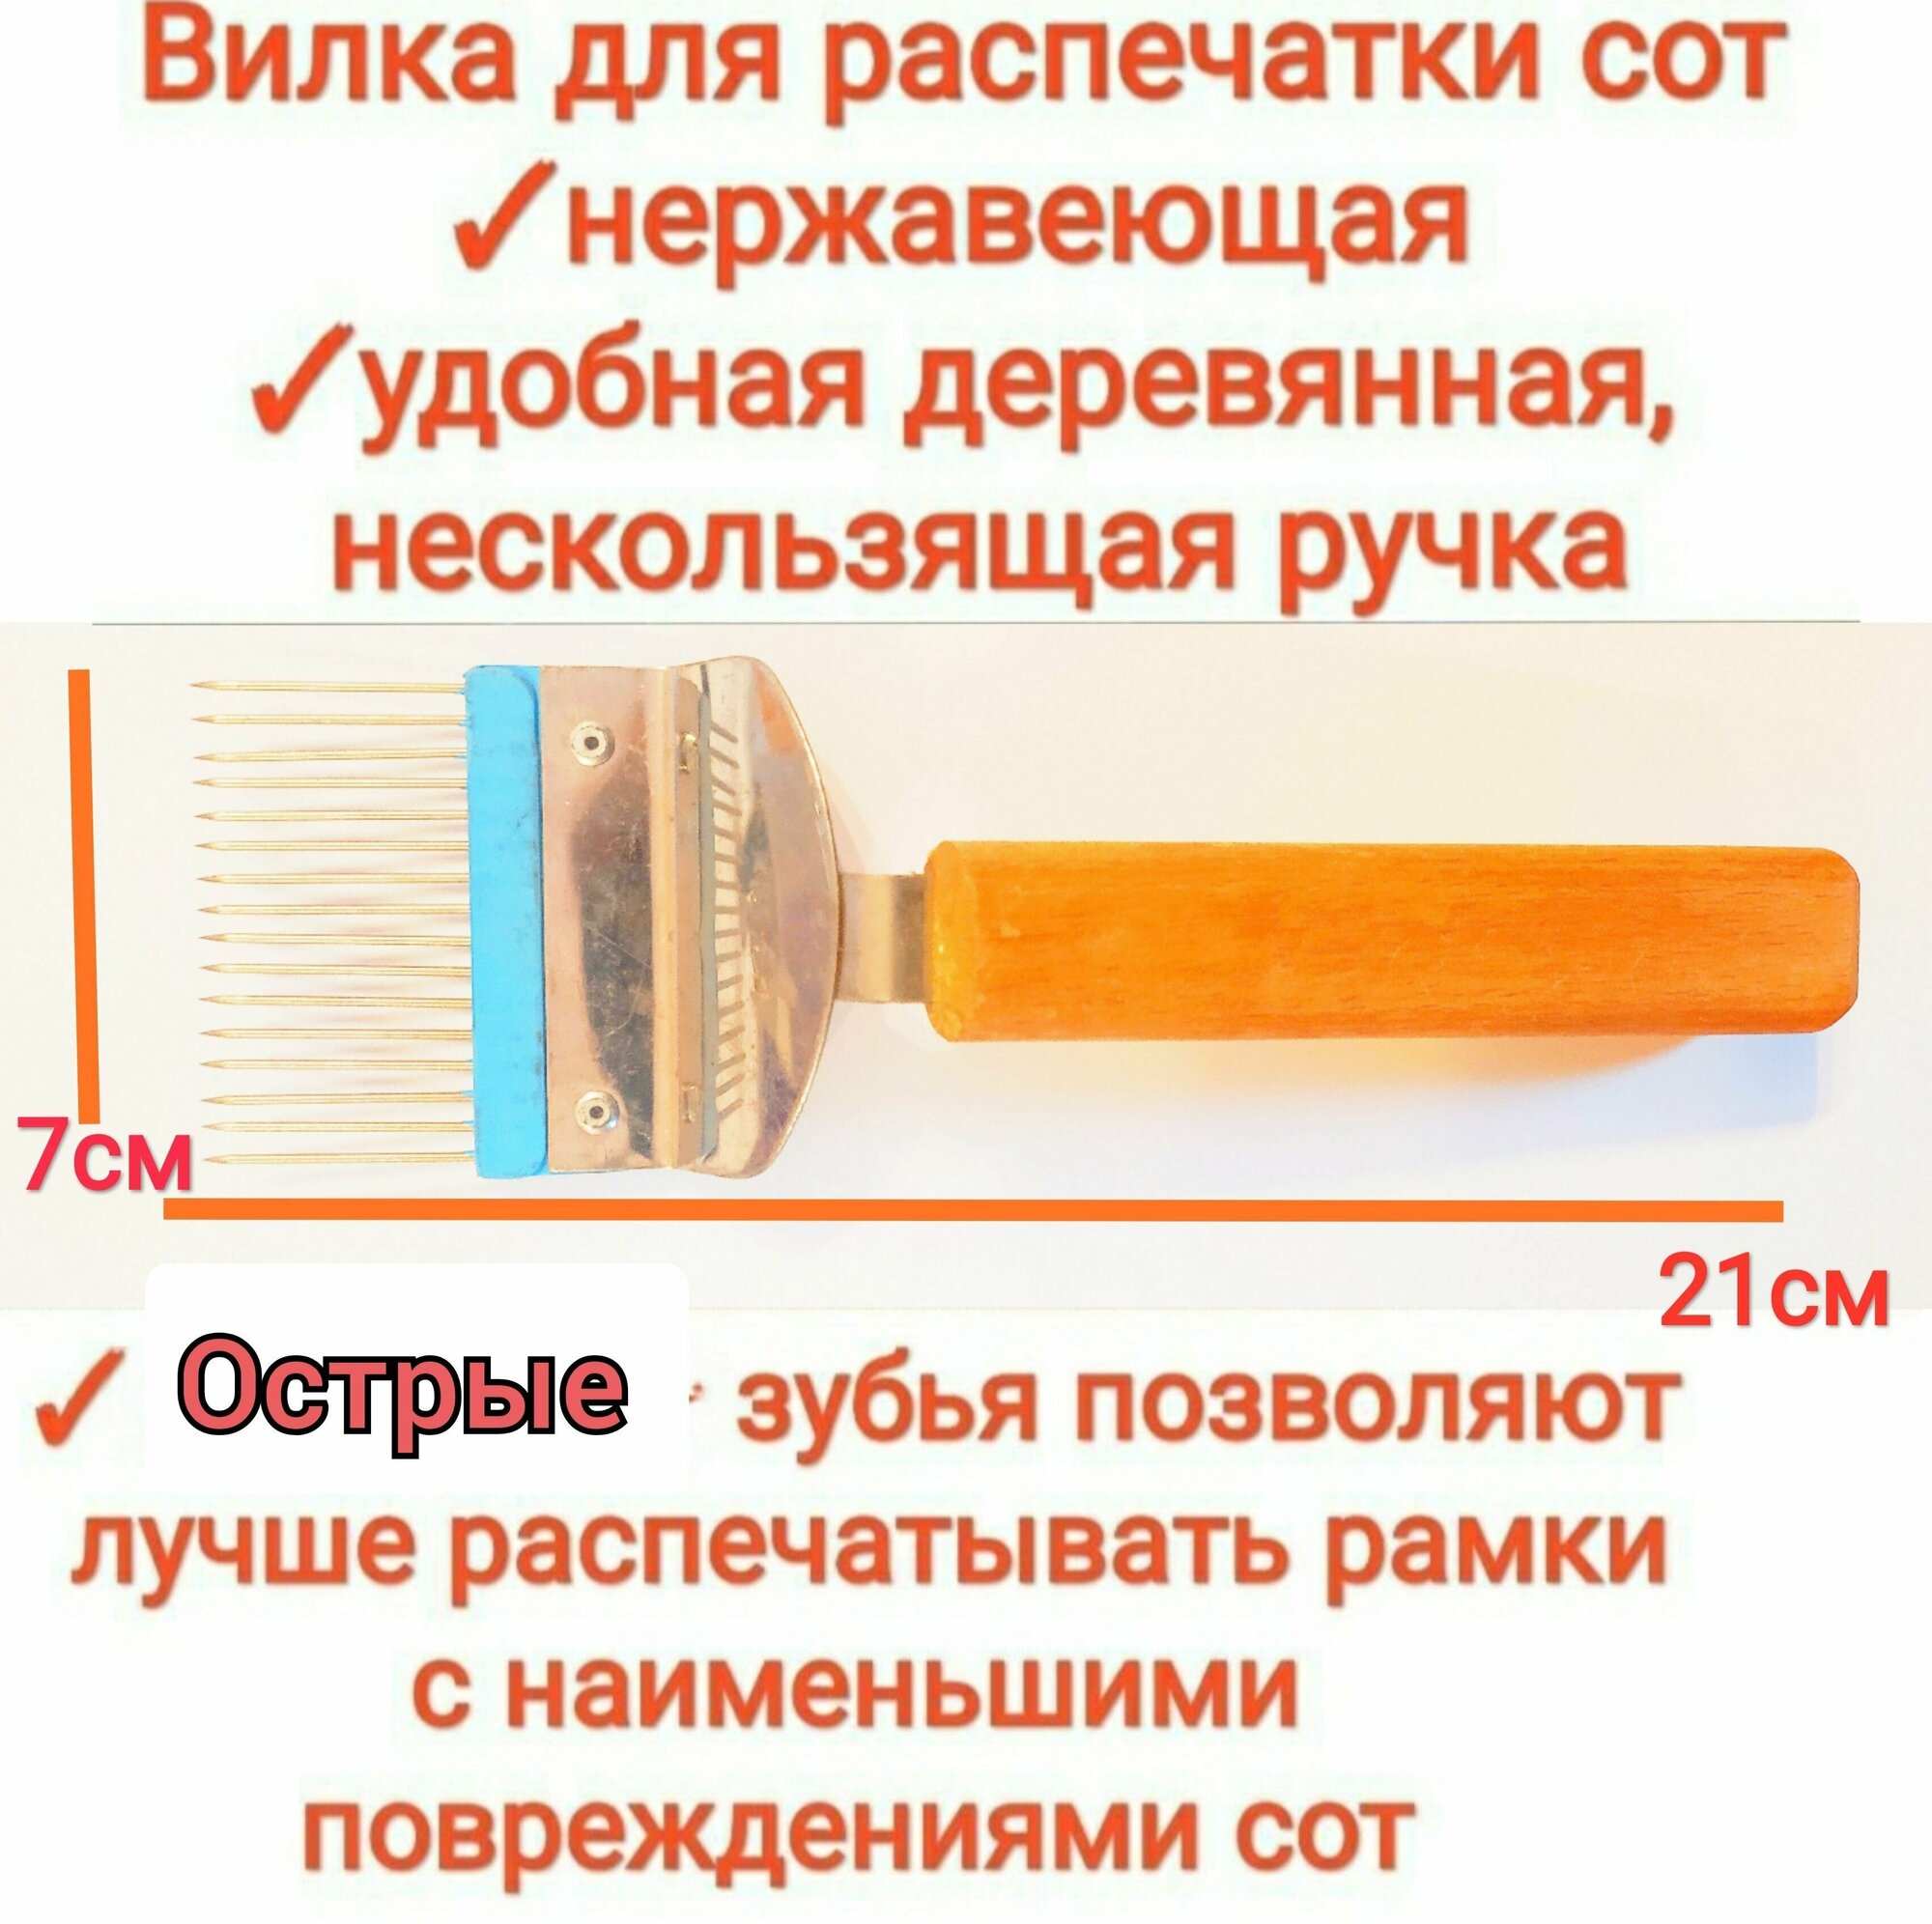 Вилка для распечатки сот (пищевая нержавейка), для распечатки медовых рамок, с острыми, прямыми зубцами